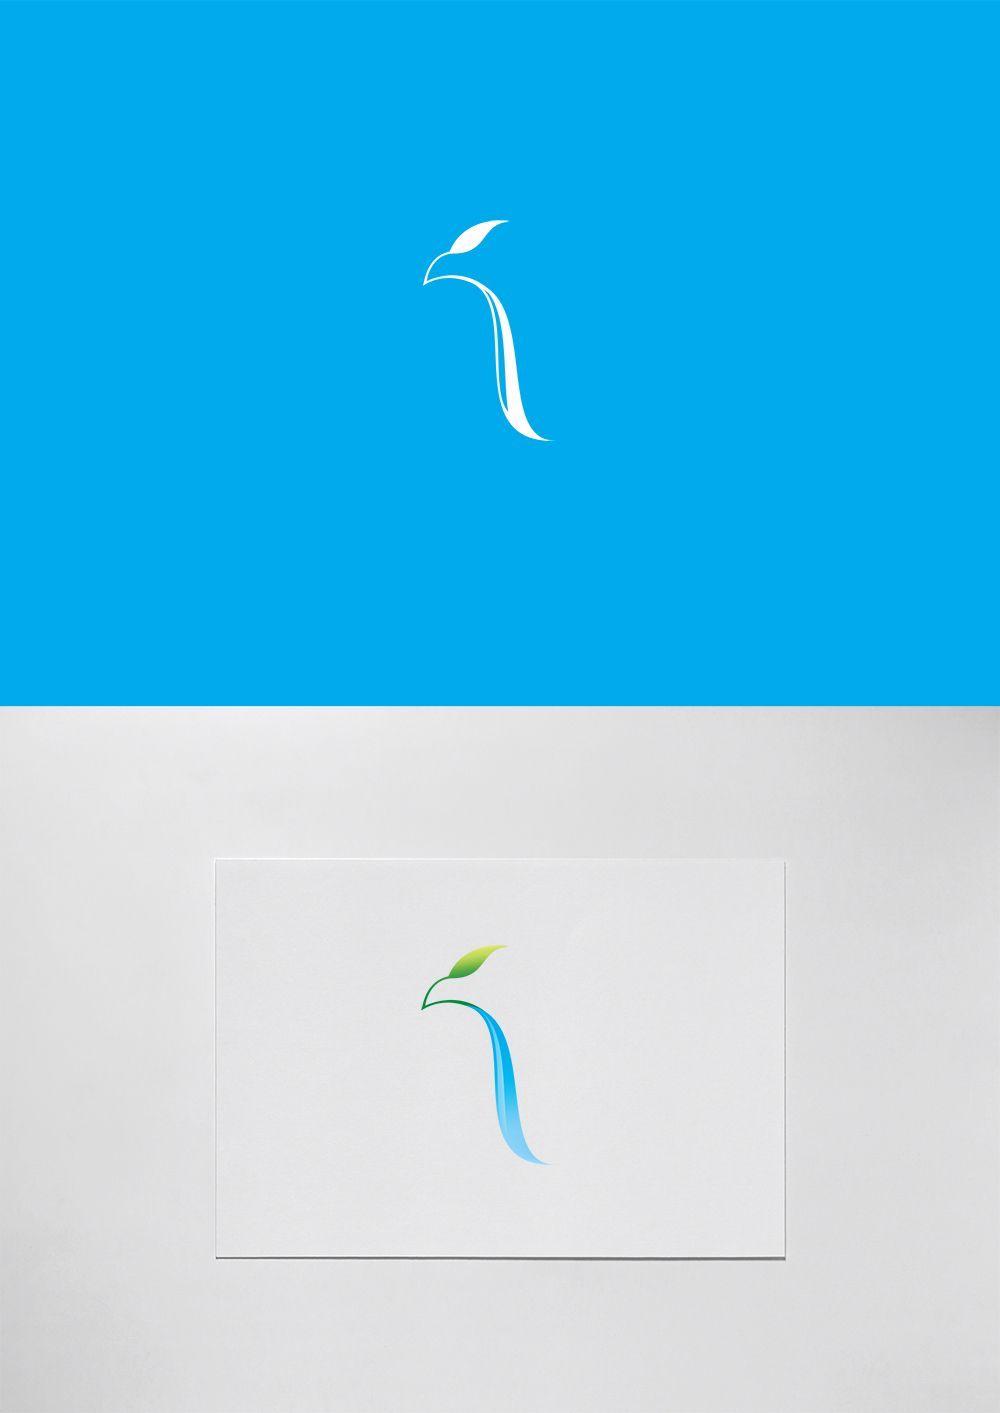 Waterfall Logo - Ripaljka Waterfall / Sokobanja (Hawk city) / SHONSKI art and design ...